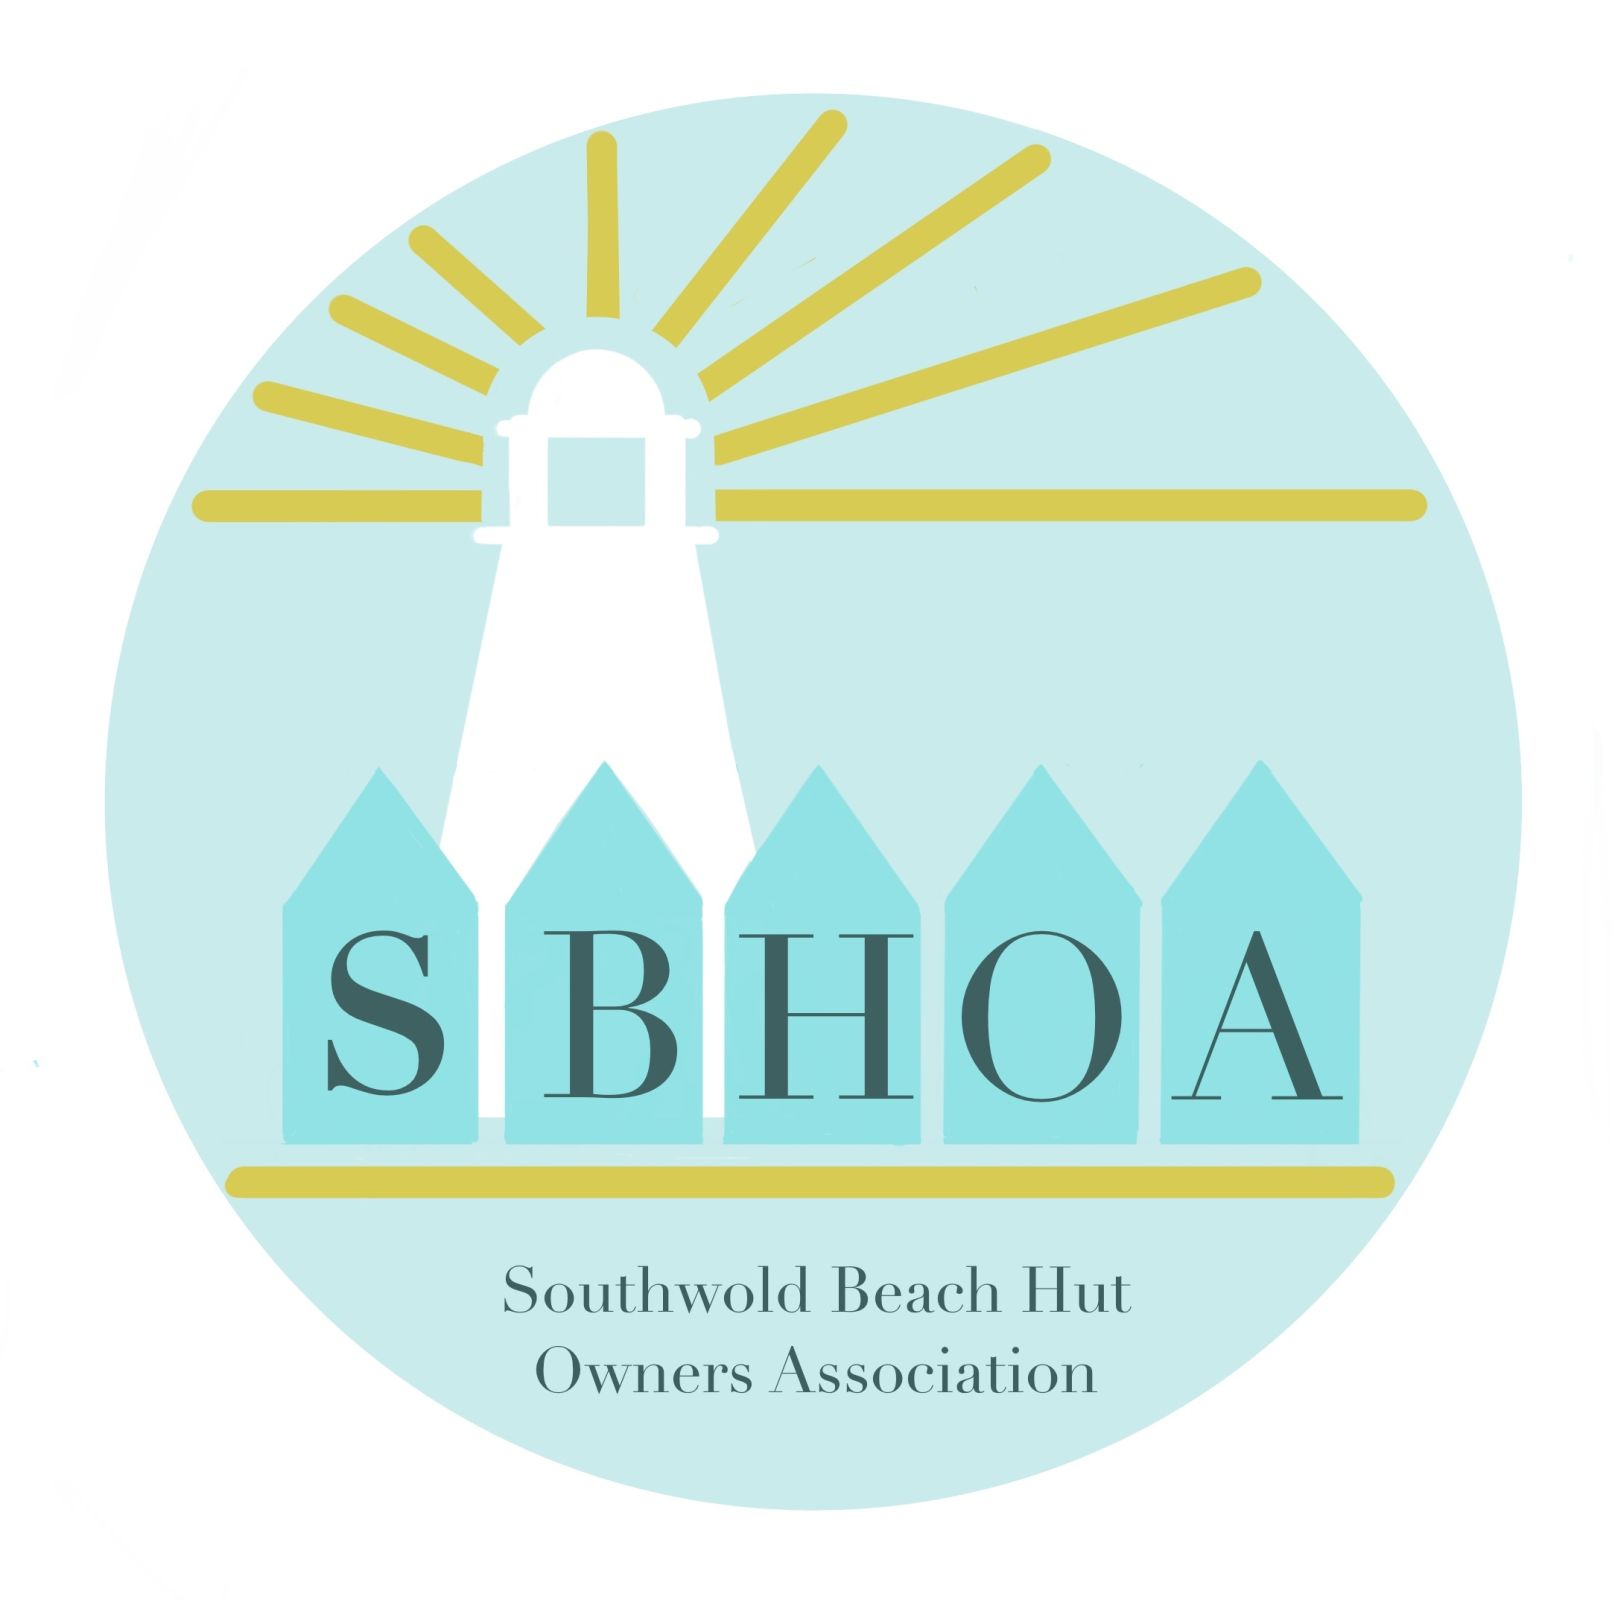 SBHOA Logo with description